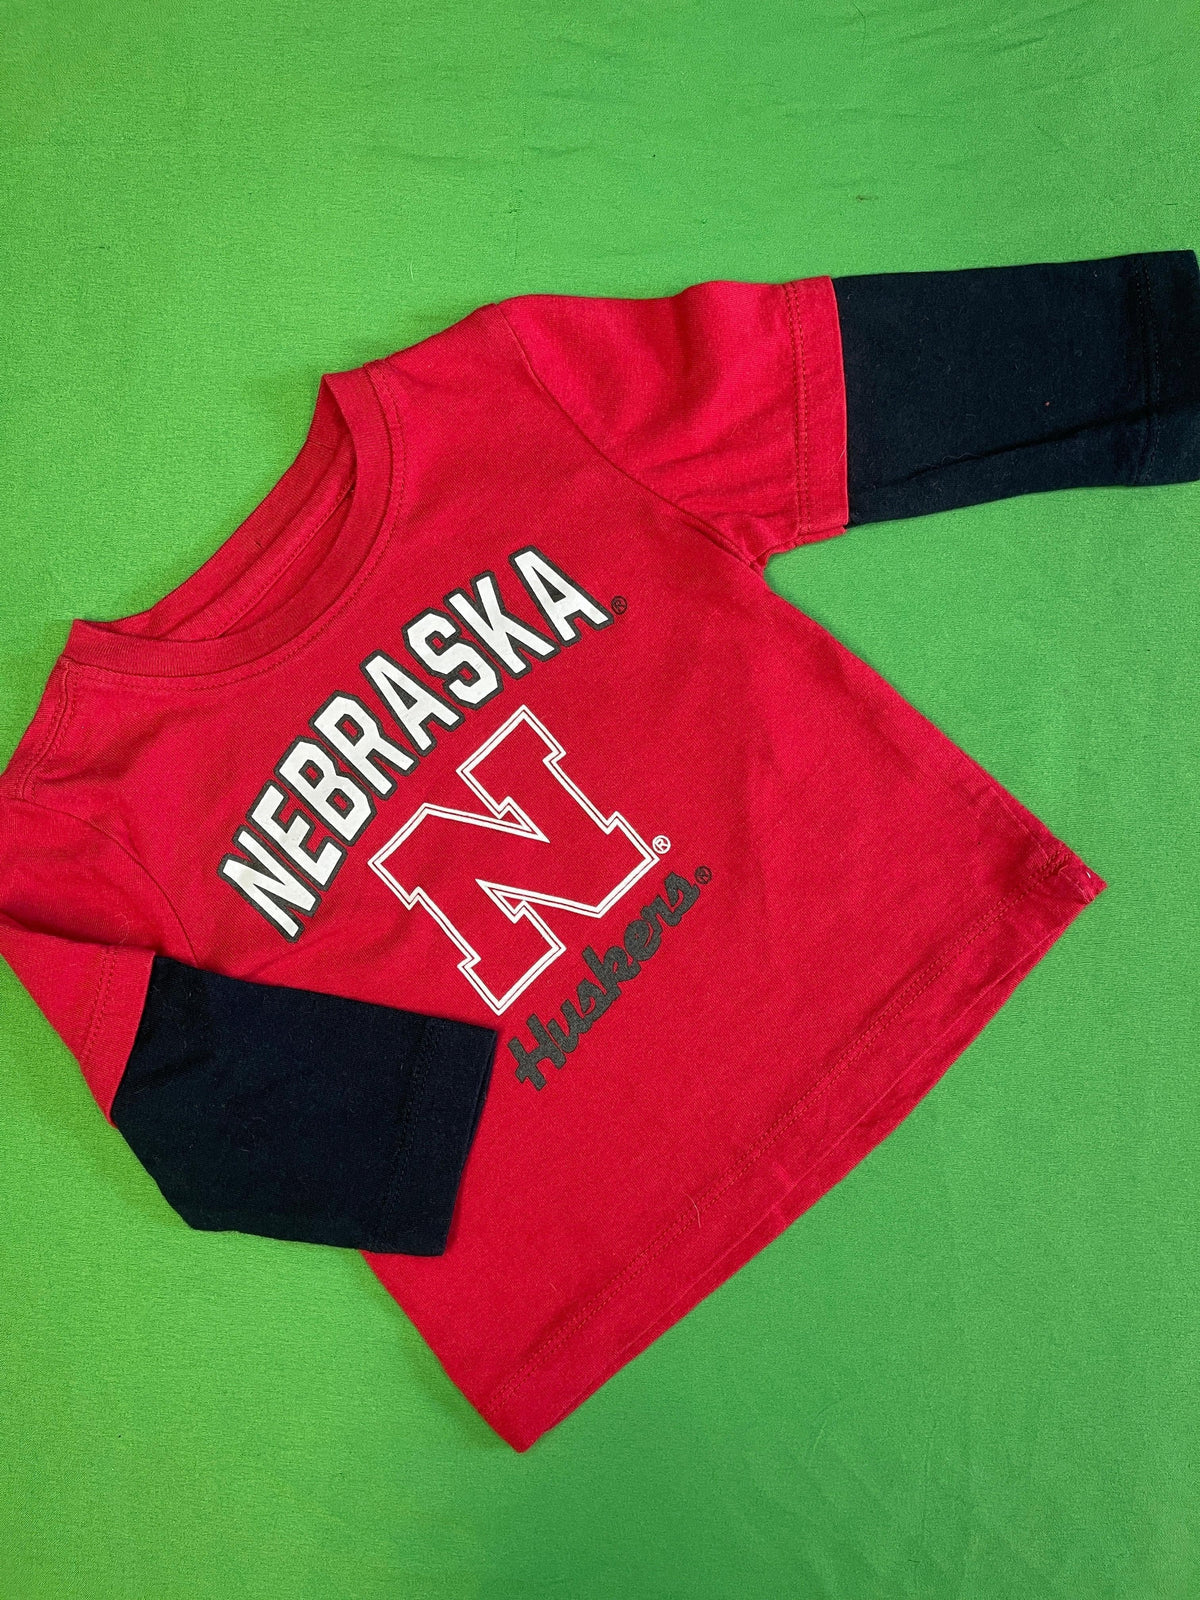 NCAA Nebraska Cornhuskers Red Long-Sleeve T-Shirt 3-6 months